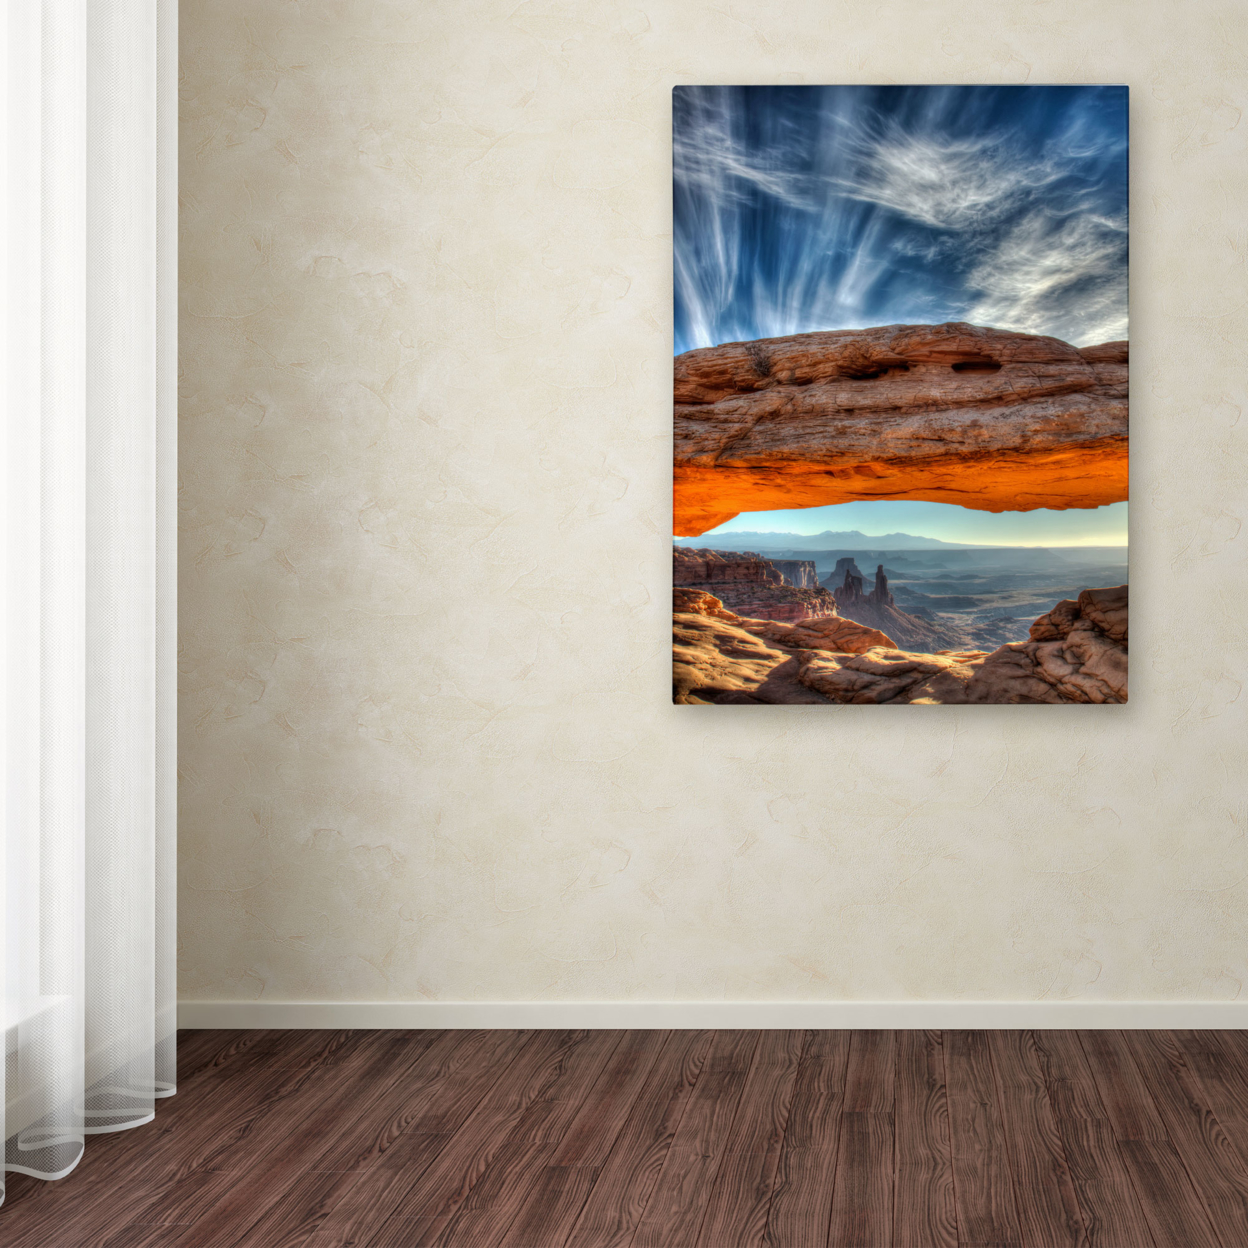 Pierre Leclerc 'Mesa Arch Sunrise 2' Canvas Art 16 X 24